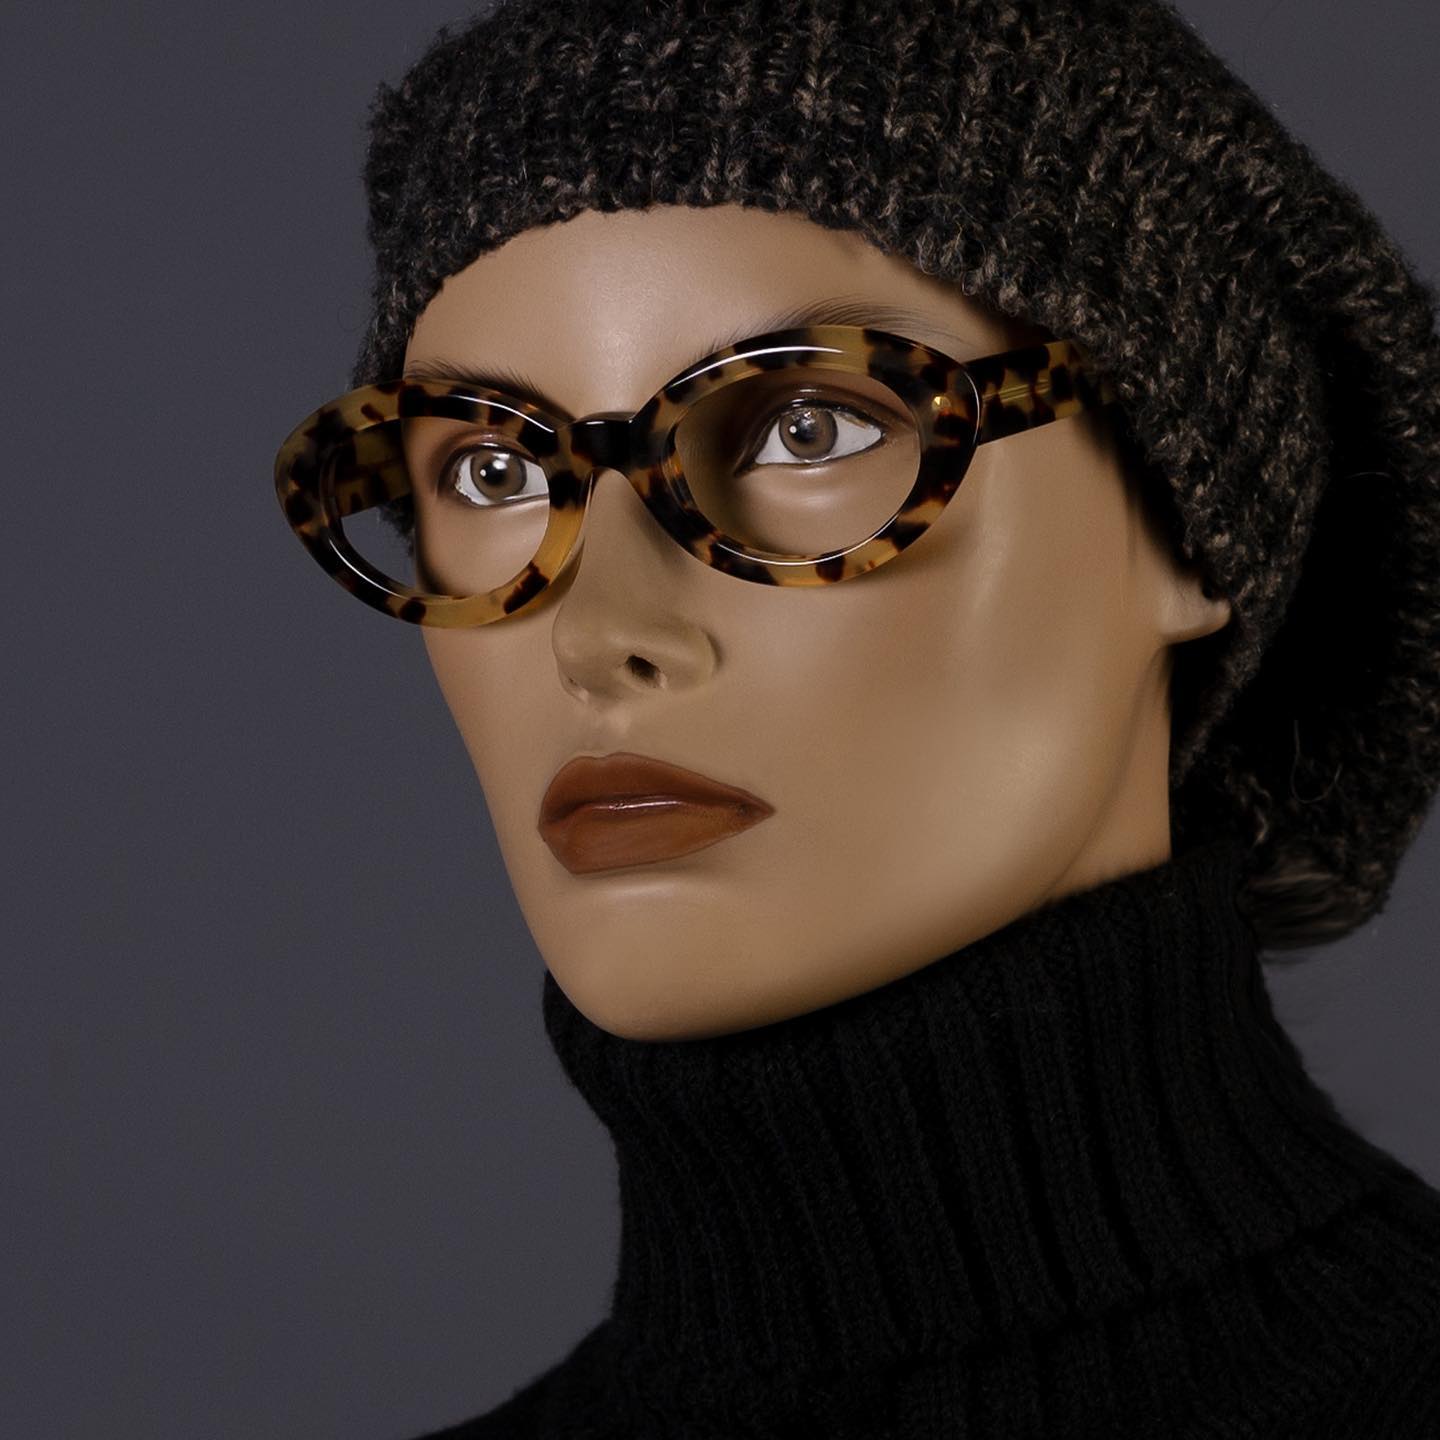 Modello MARI un classico della collezione Ottica Mantovani. 

👓 Ottica Mantovani Venezia dal 1871, occhiali d’autore per donna e uomo.

ℹ️ Visita il nostro sito per vedere tutta la nostra produzione www.otticamantovani.it

📞 Chiamaci per informazioni +39 0415223427

#manichino #manikin #sunglasses #otticamantovani #otticamantovanivenezia #lunettes #brillen #brillenstyling #ottica #designedinvenice #glasses #madeinitaly  #eyeglasses #eyewear  #eyewearfashion #eyes #vision #occhiali #optometry  #stylish #design #occhialidavista #uniqueeyewear #eye #opticalshop #ophthalmology #eyewearstyle #cool #glassesstyle #sunglass